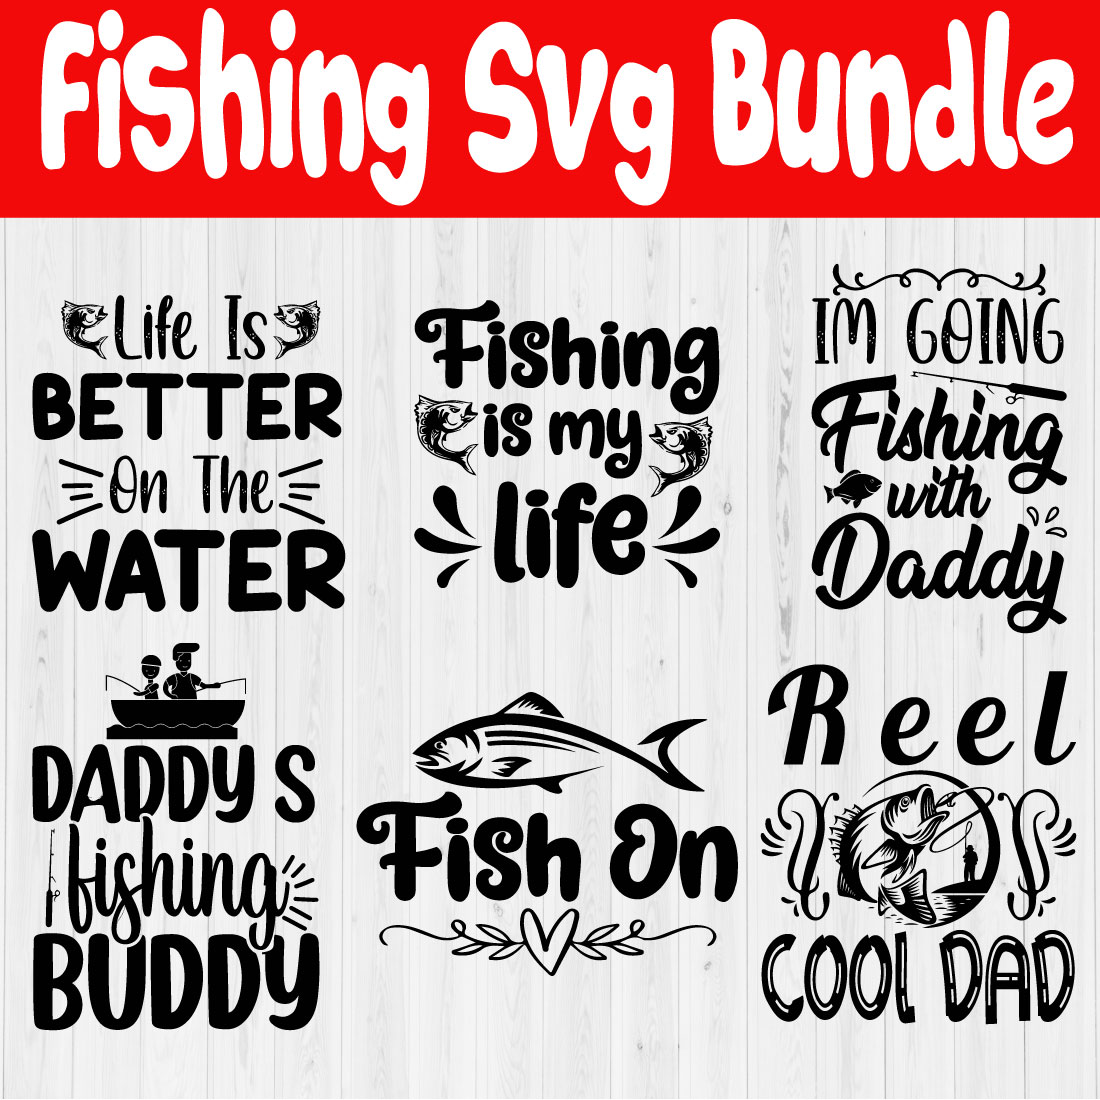 Fishing Black svg design set Vol6 cover image.